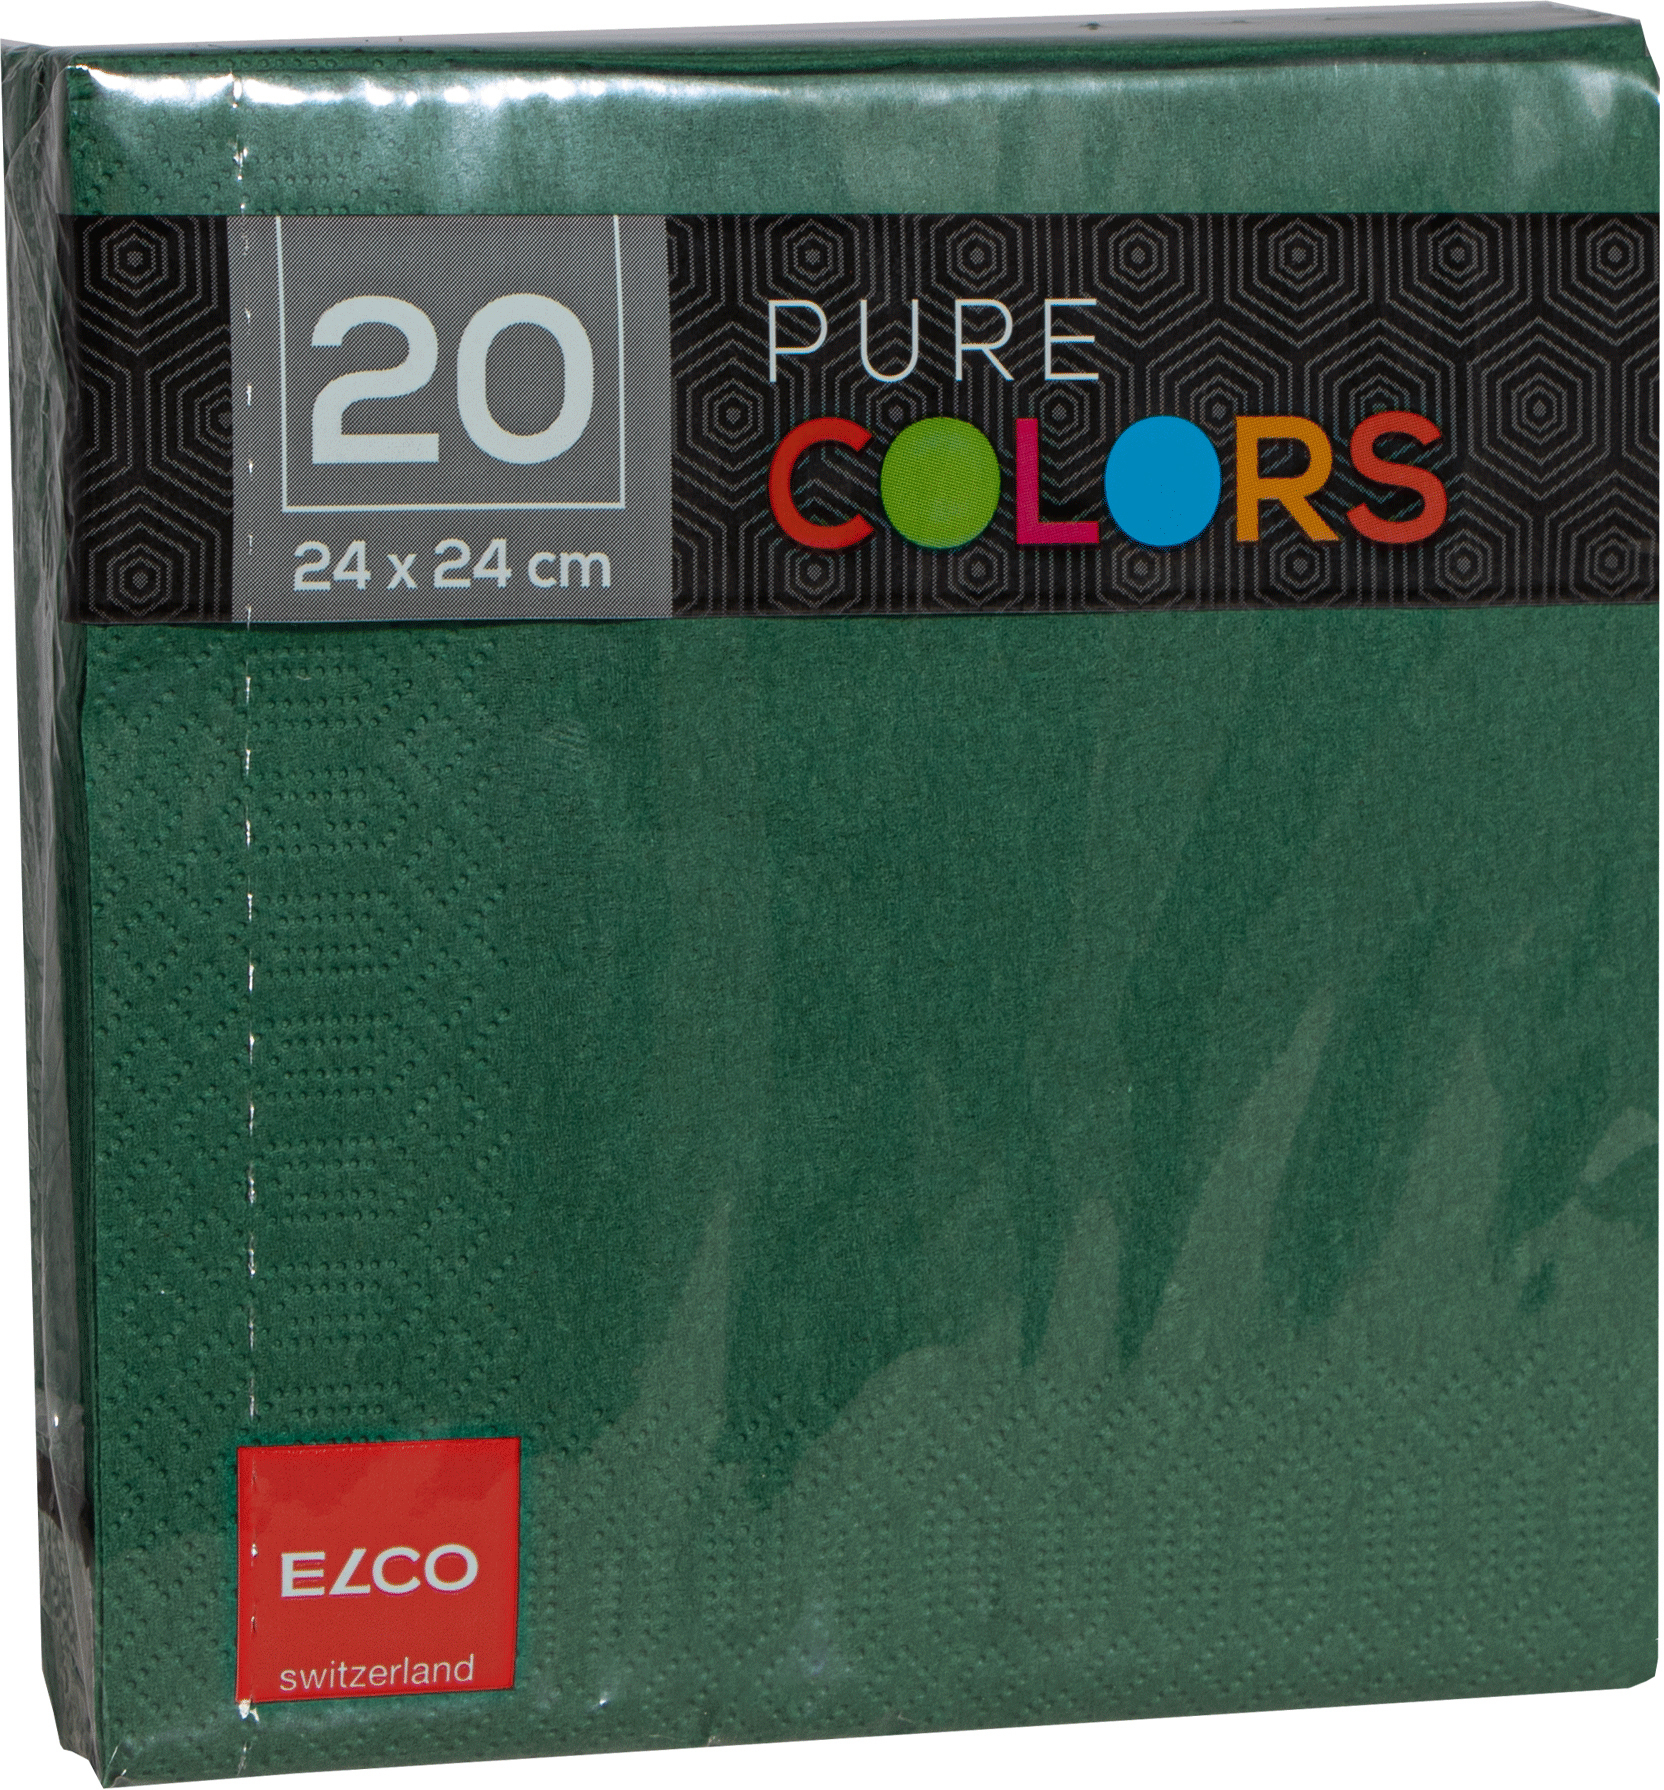 ELCO Serviettes tissue 24x24cm PC234020-056 3 plis, vert foncé 20pcs.